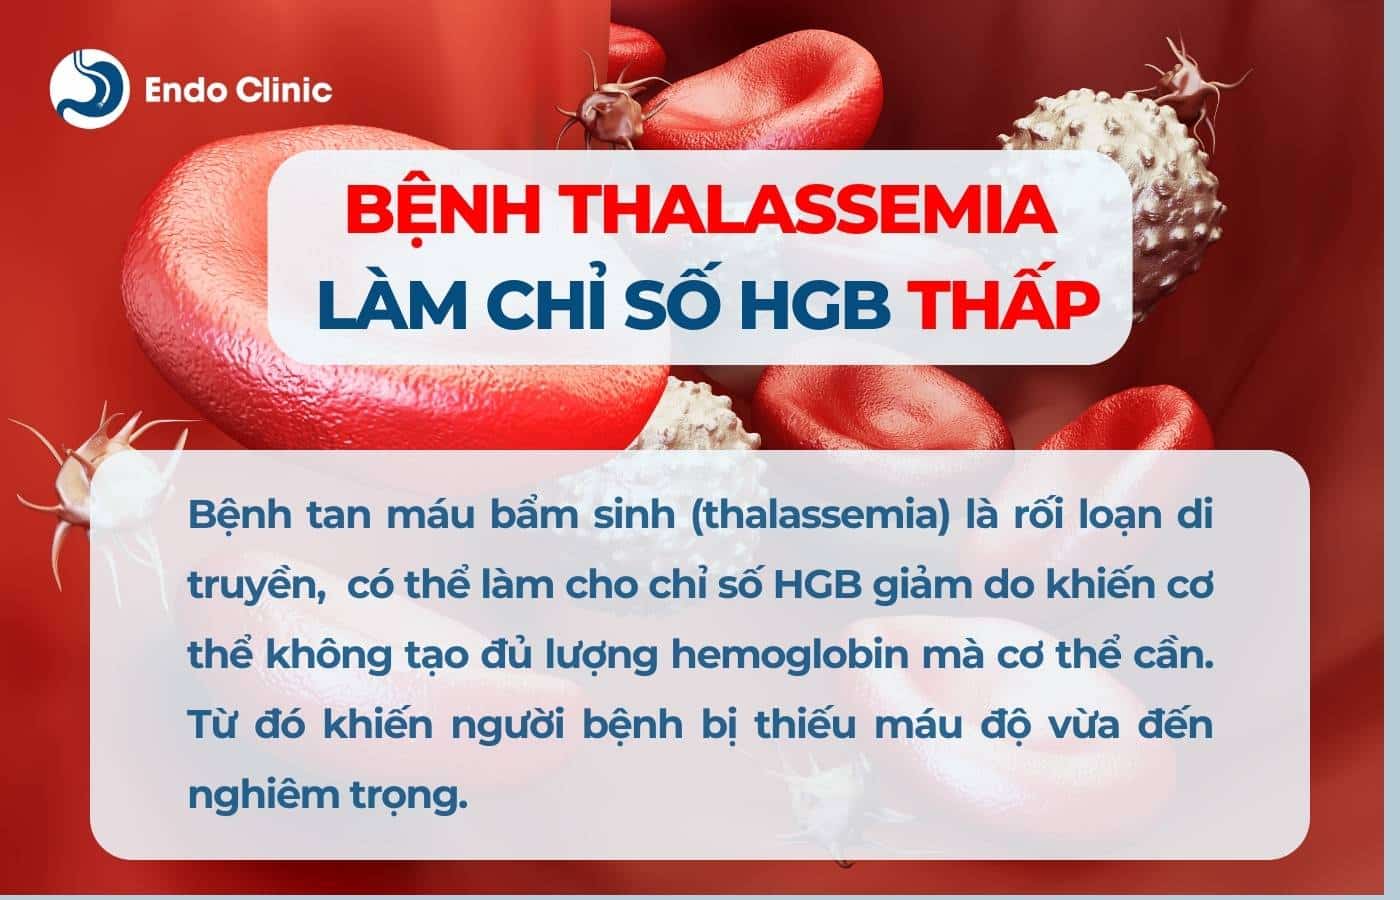 Bệnh Thalassemia làm giảm HGB